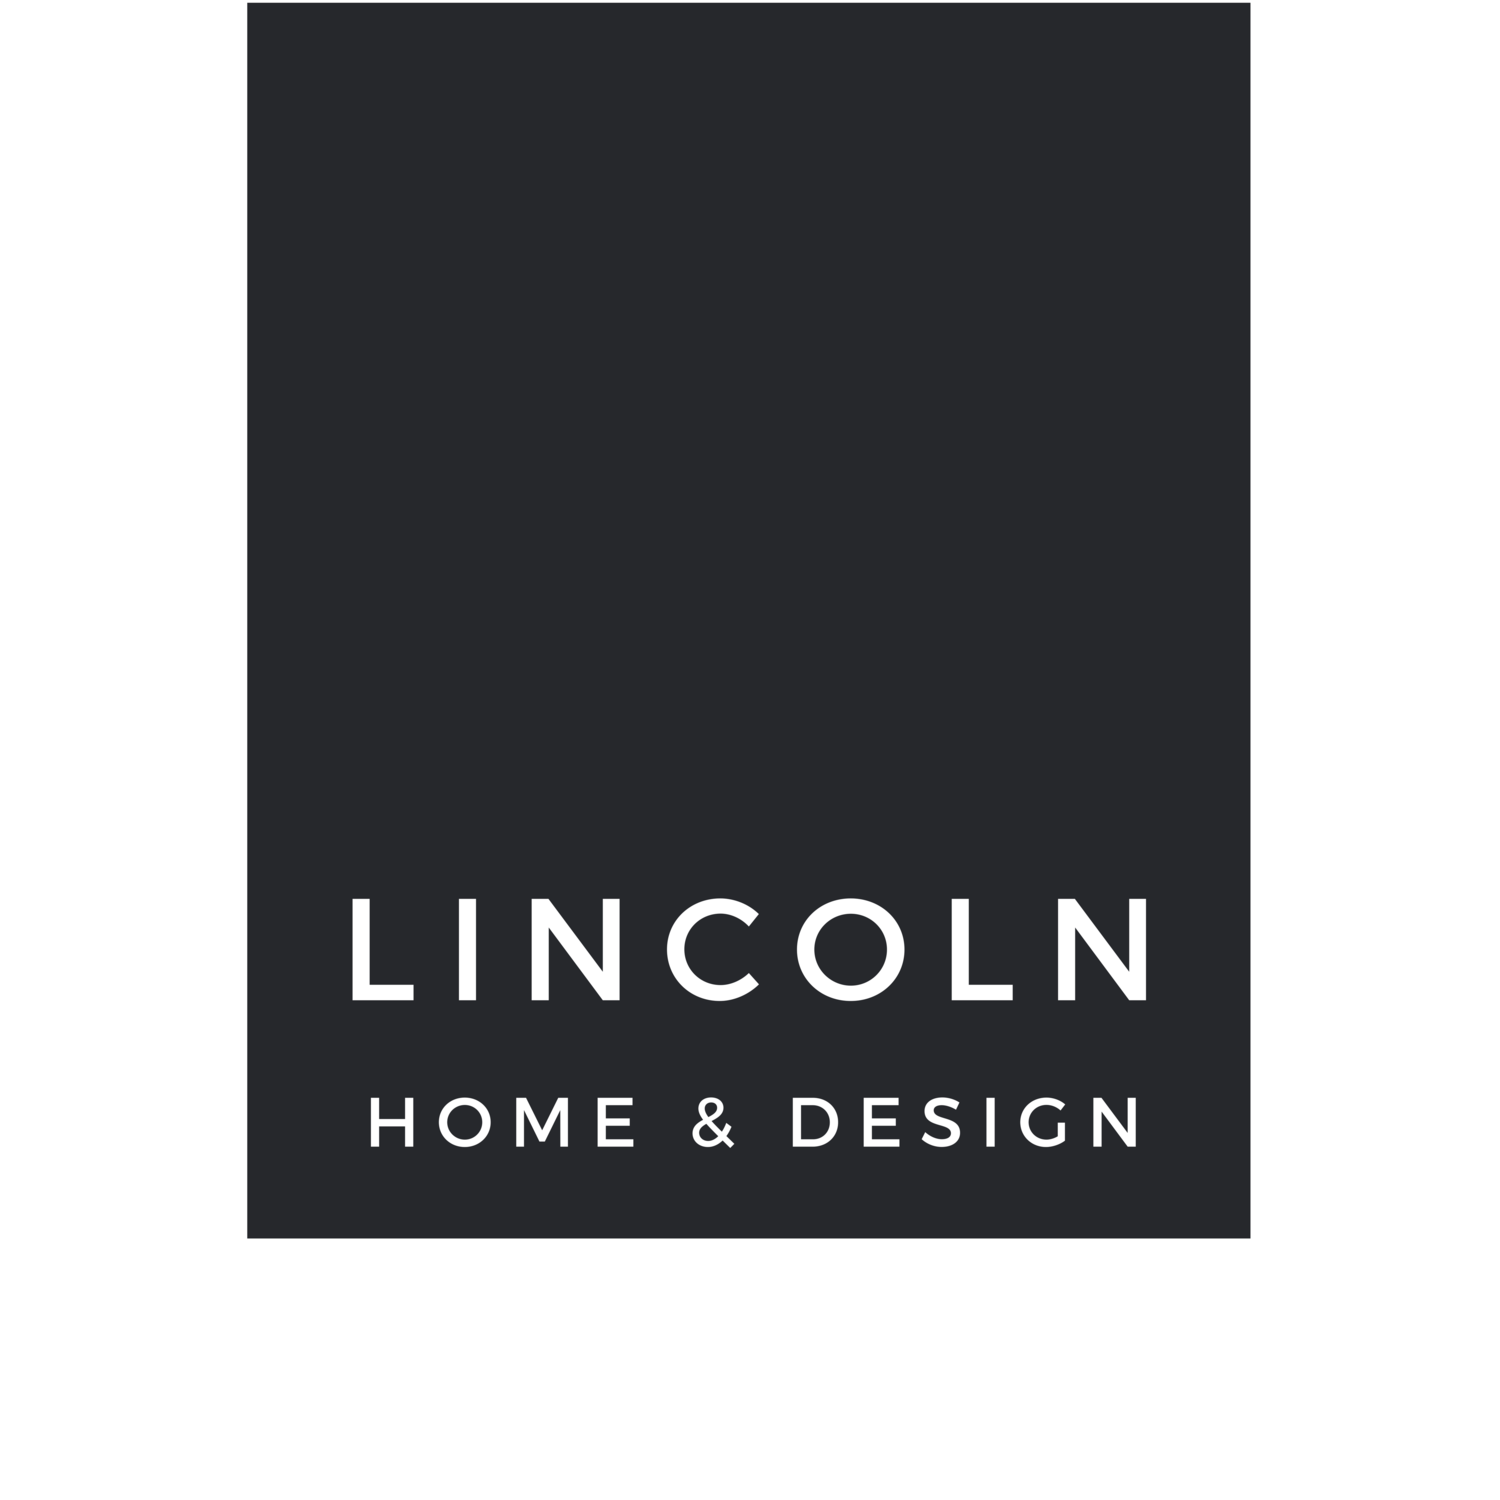 LINCOLN HOME & DESIGN